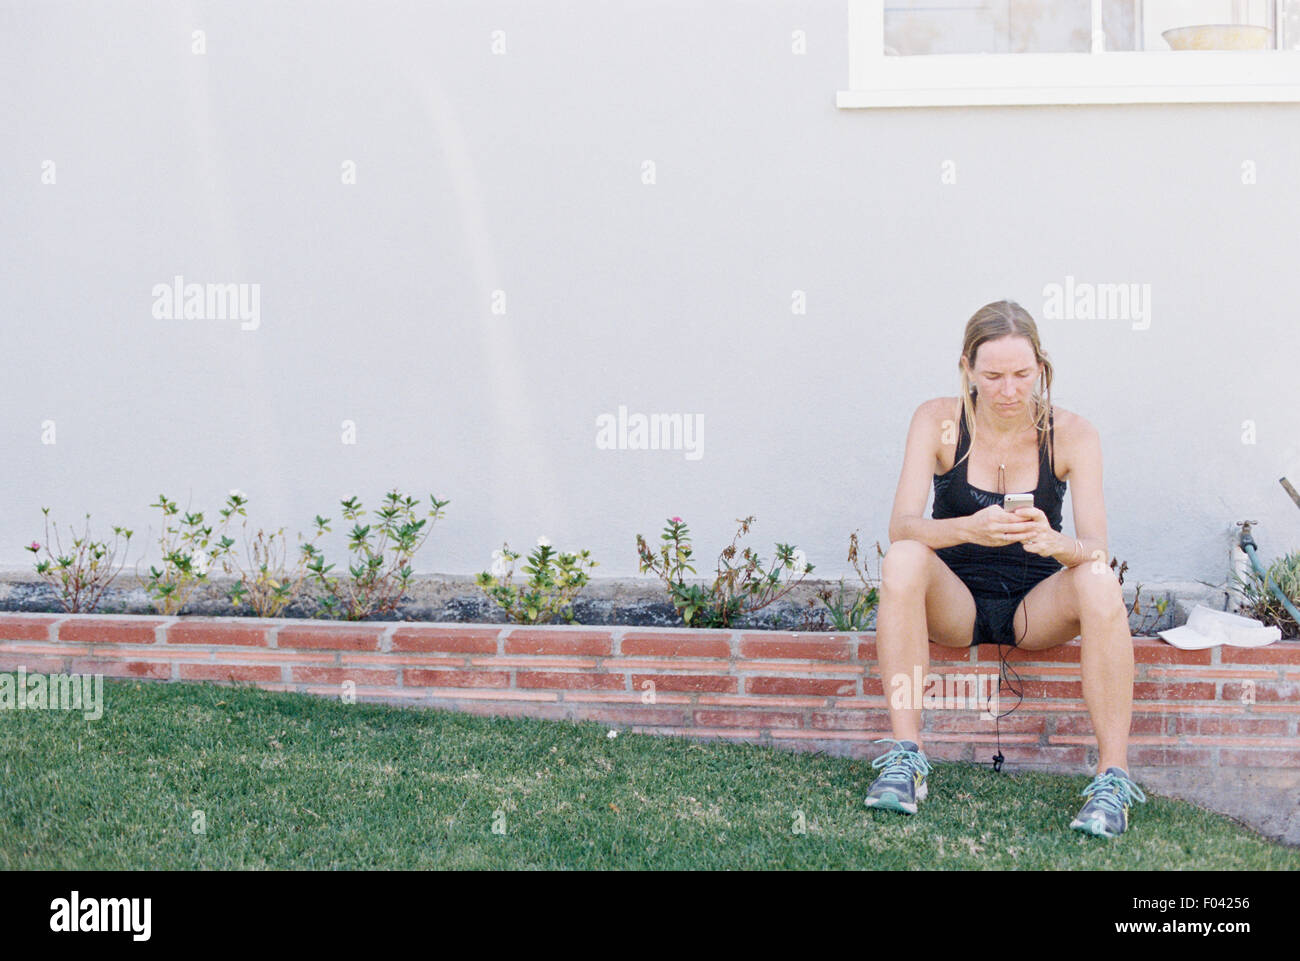 Dans les vêtements de sport femme blonde assise sur un mur de jardin, se reposant après un jogging. Banque D'Images